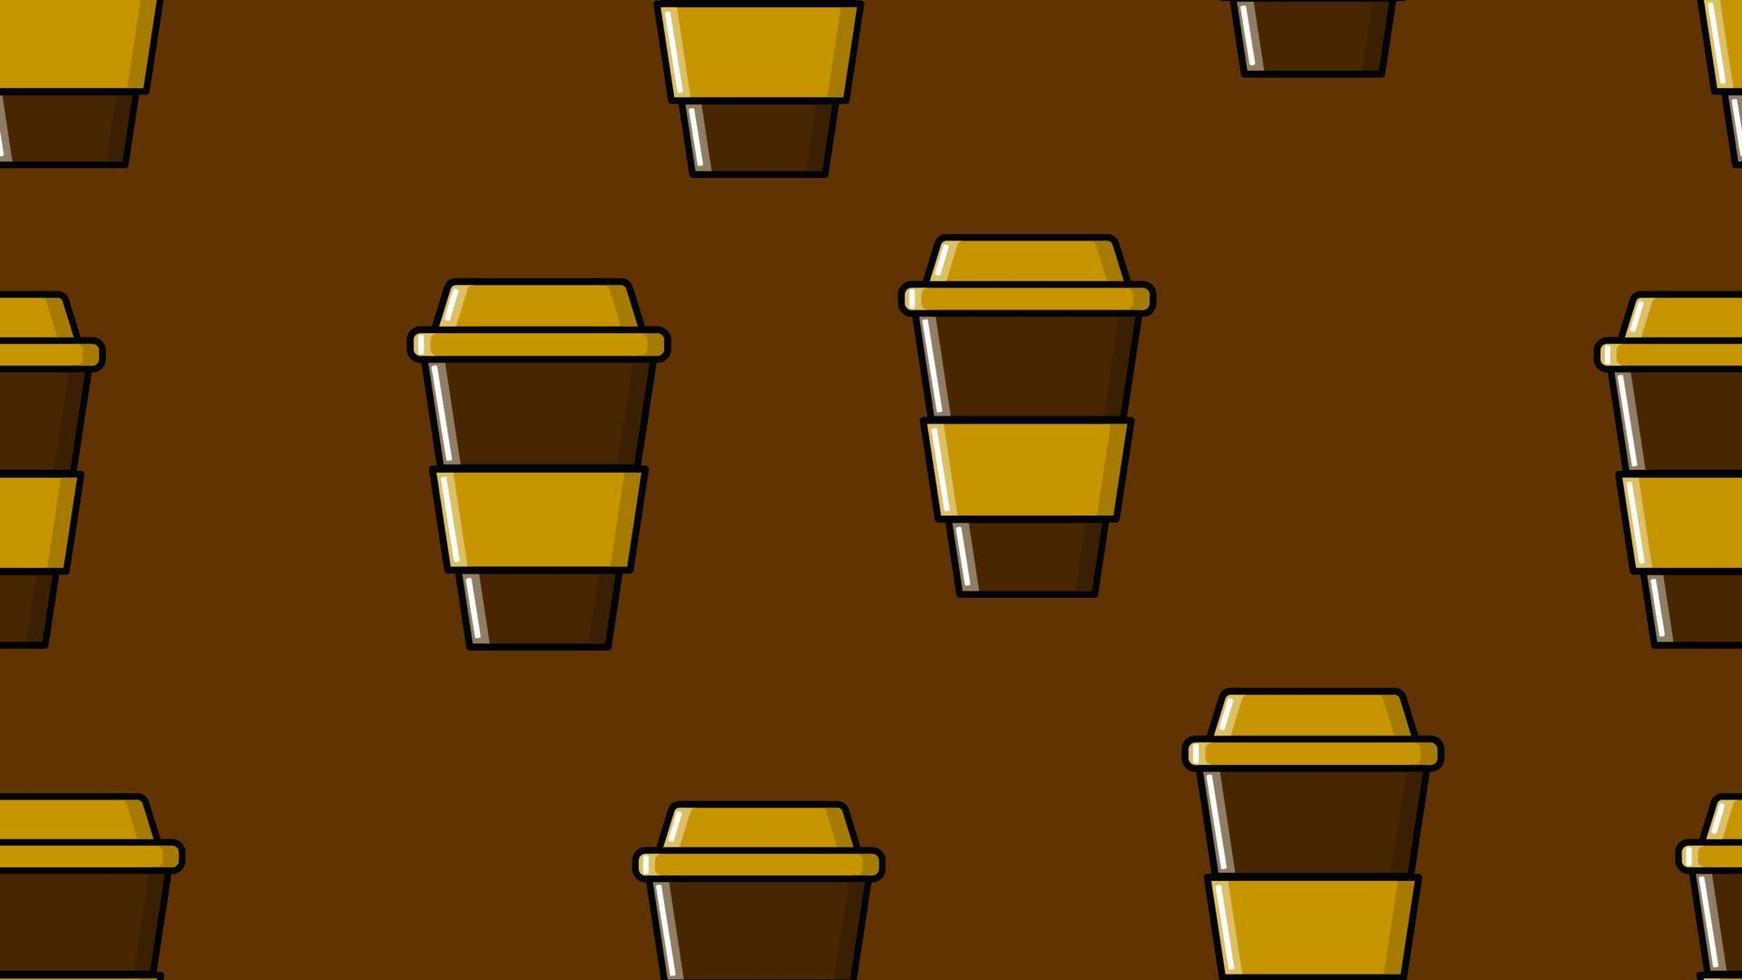 sömlös mönster av upprepa glasögon med en snabbt varm uppfriskande americano espresso kaffe i en kartong kopp hämtmat på en brun bakgrund. vektor illustration